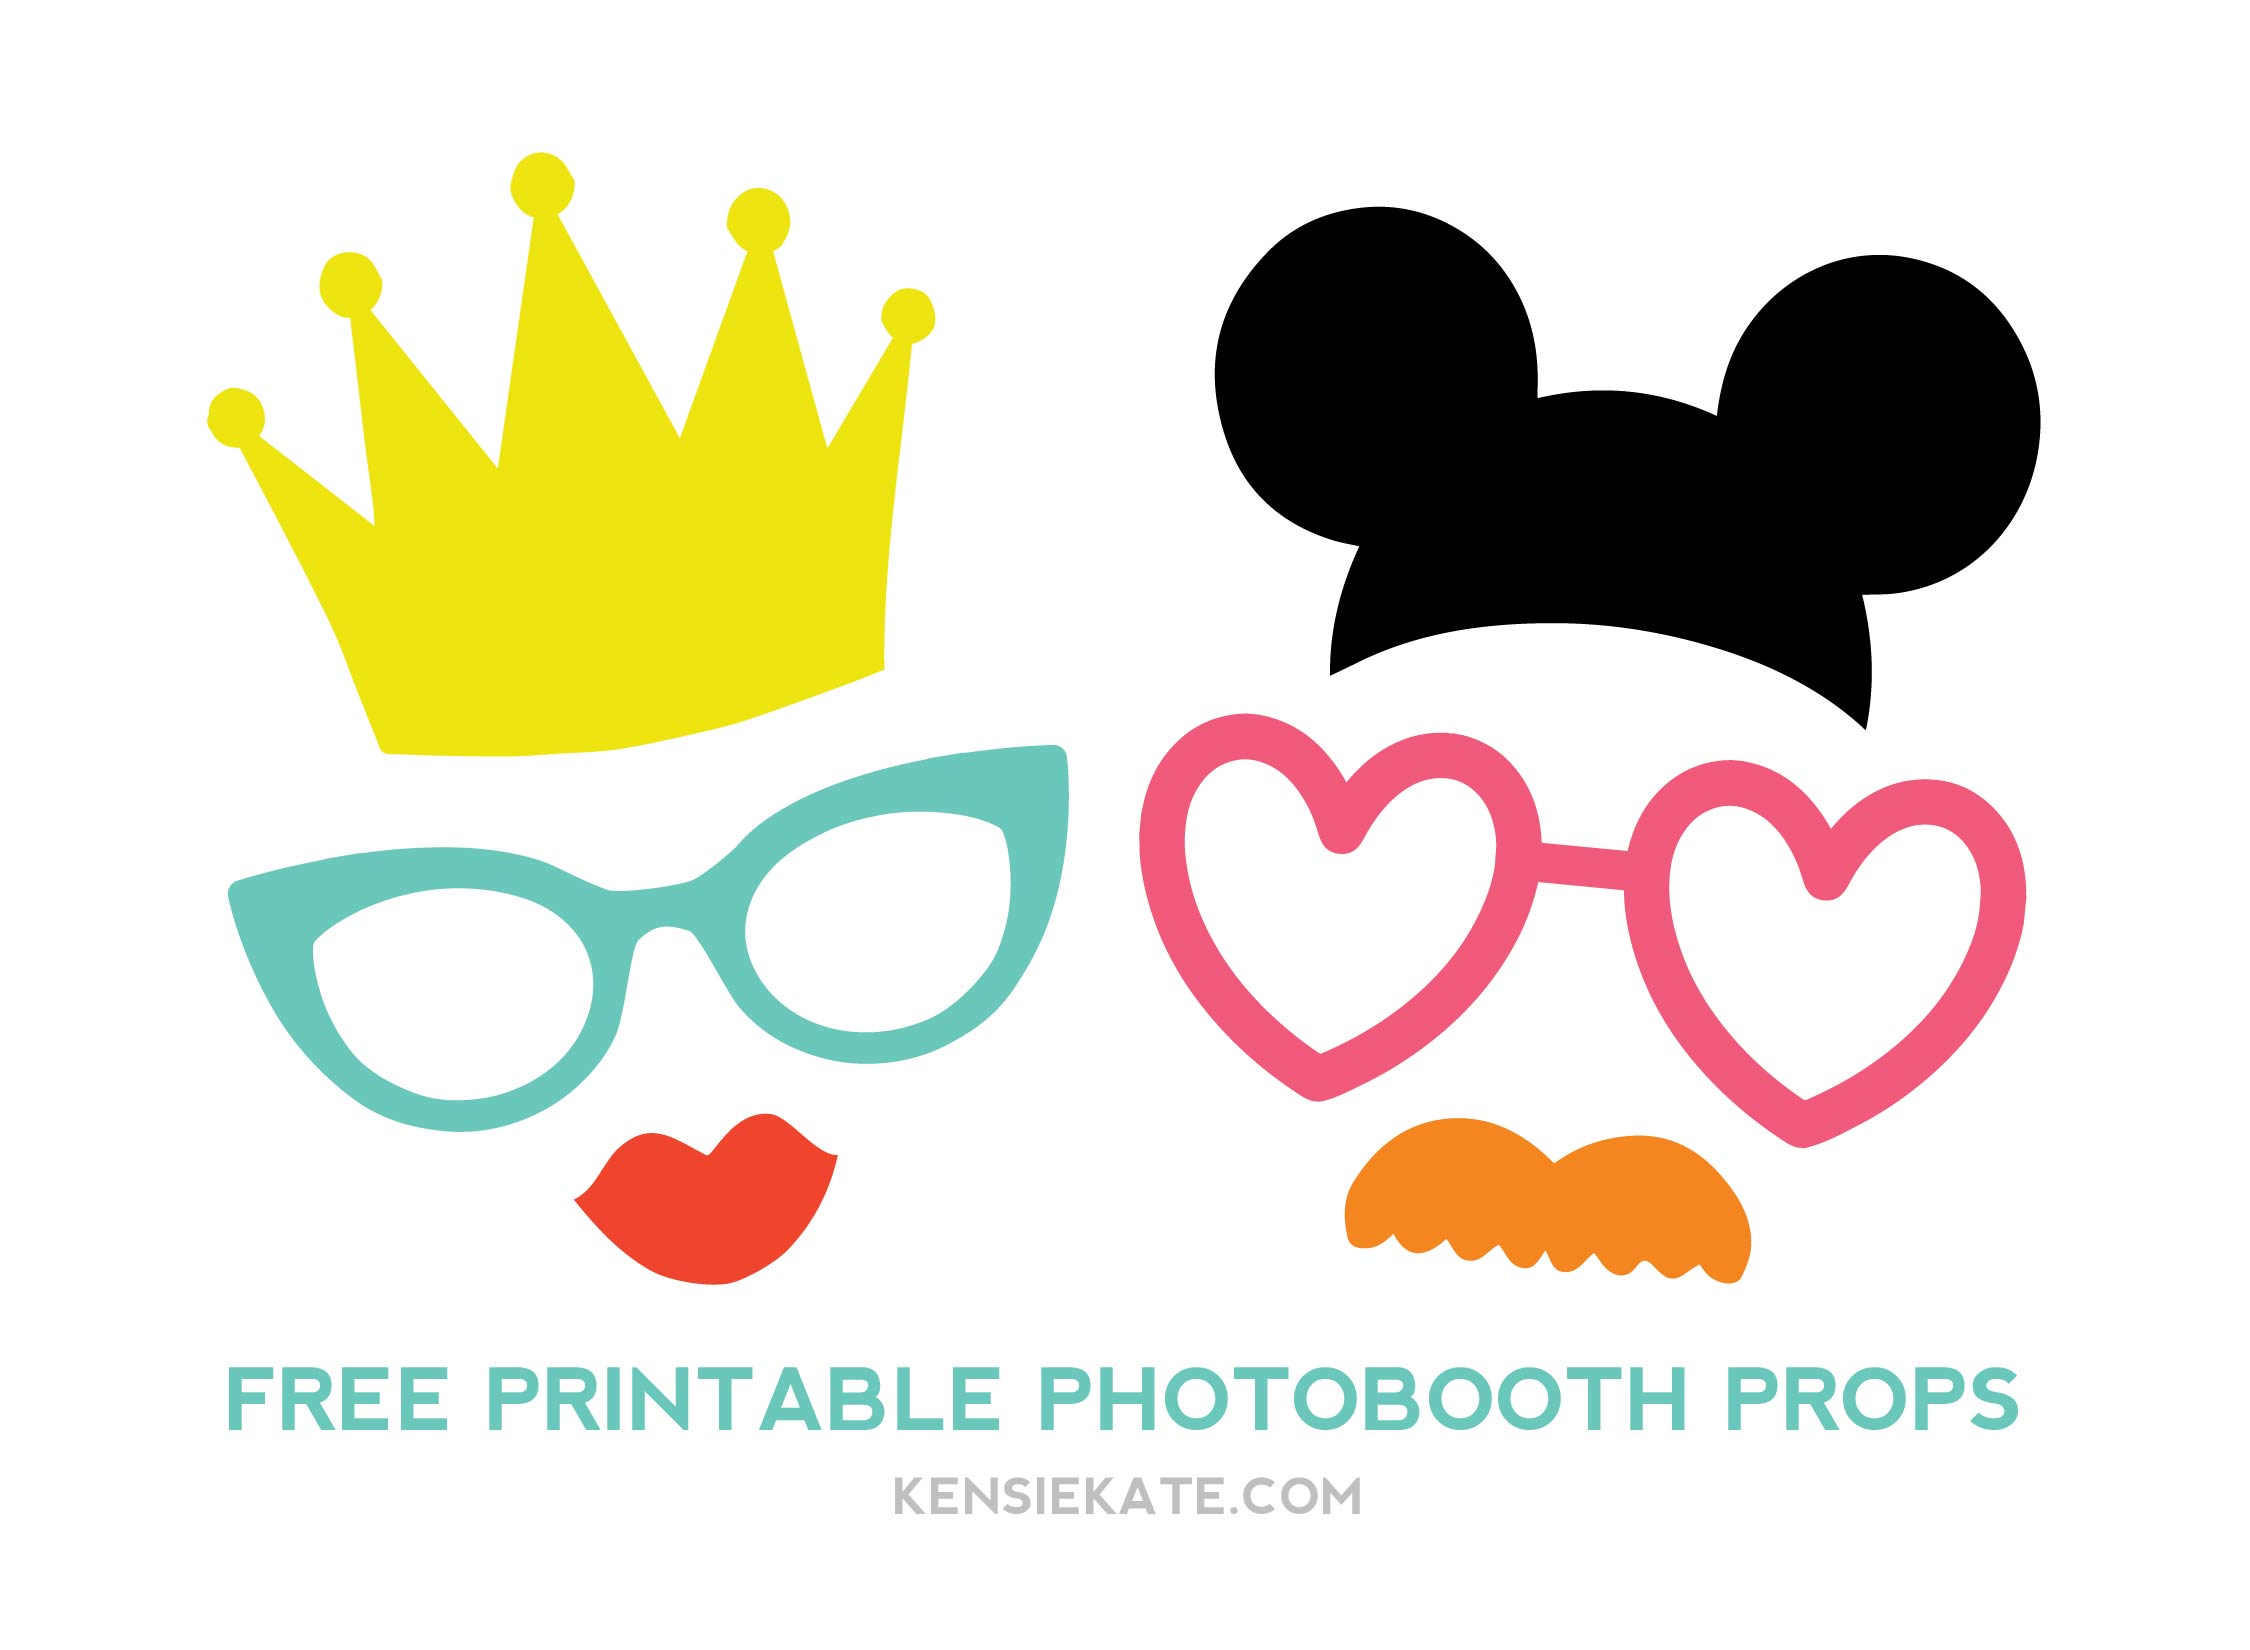 more photobooth props — Kensie Kate